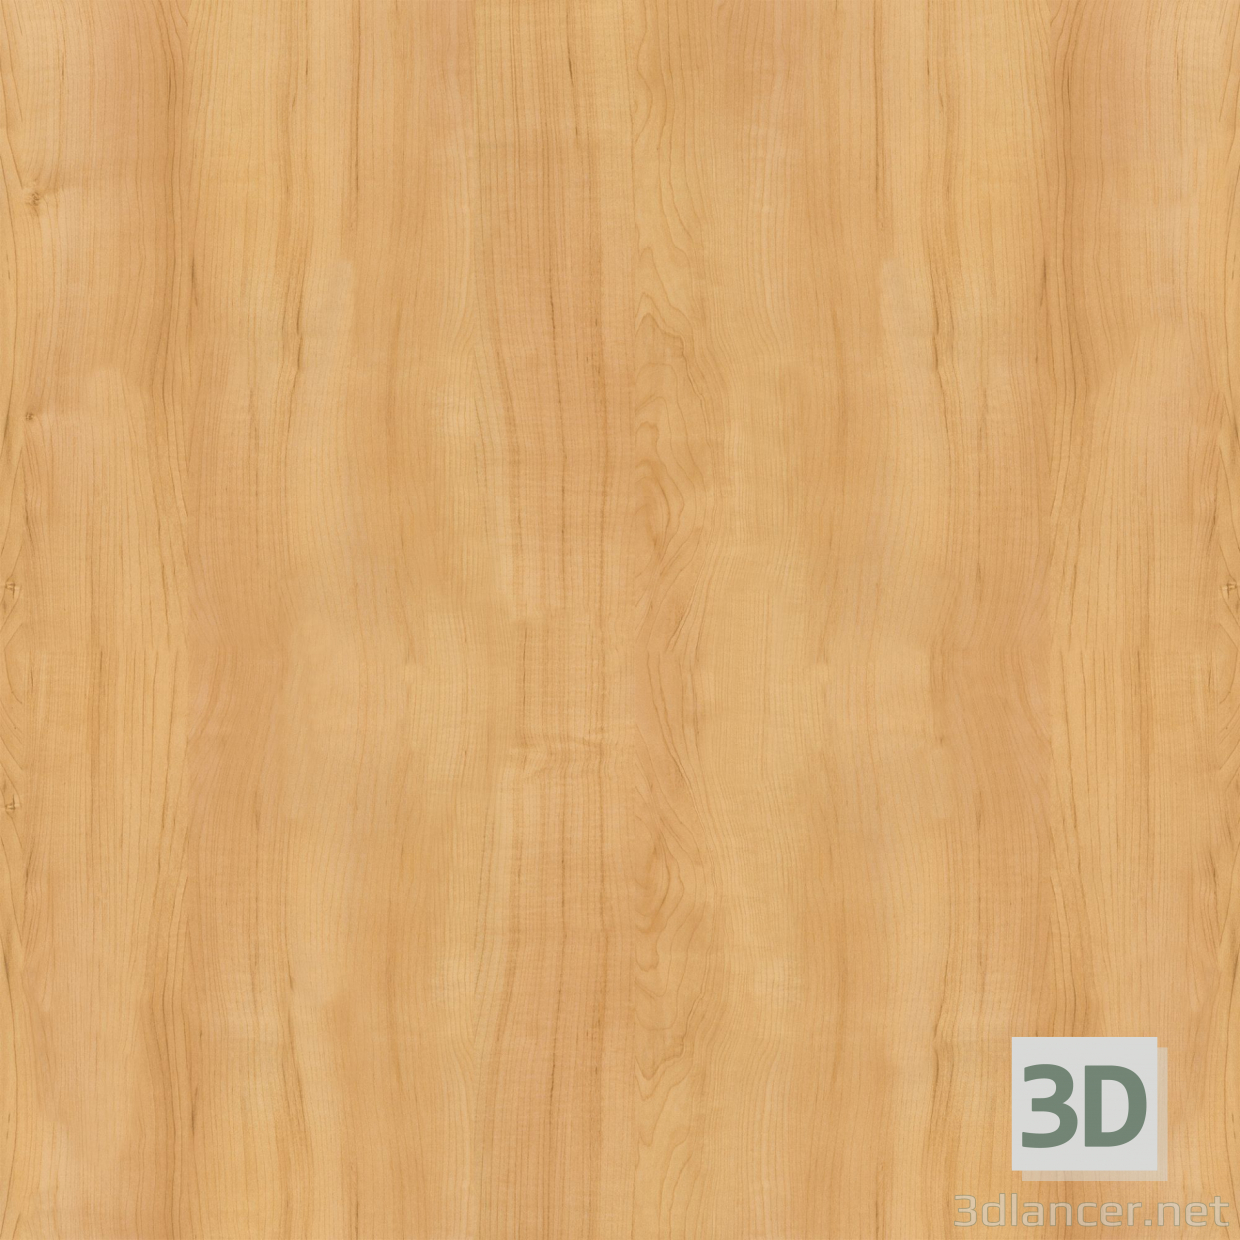 Textur Holz kostenloser Download - Bild